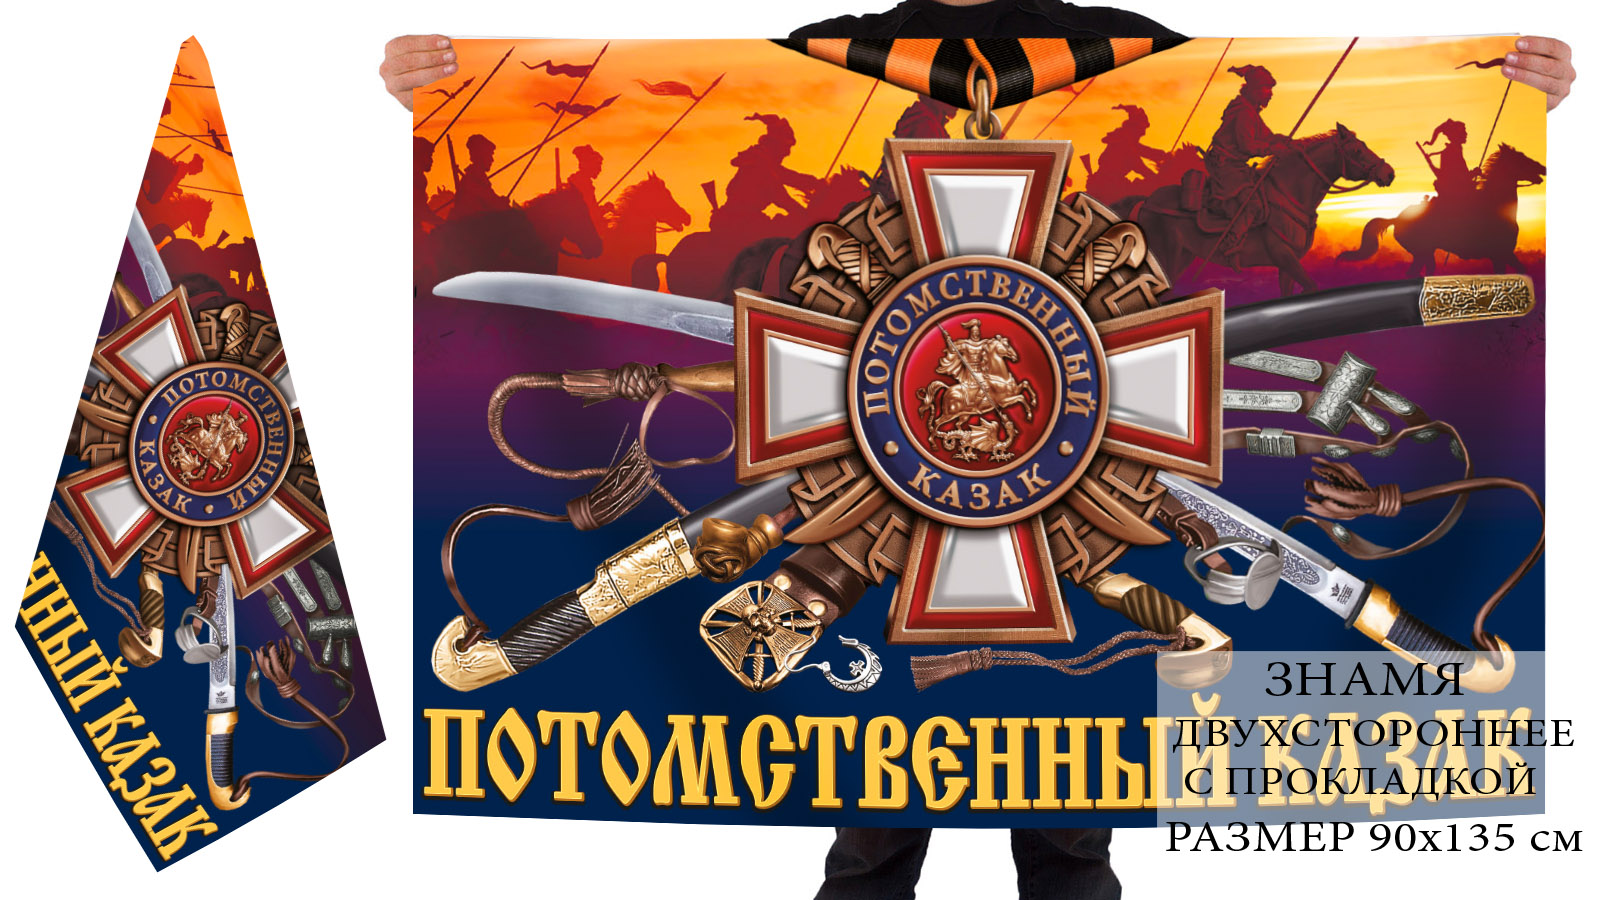 Купить двухстороннее знамя в подарок Потомственному казаку